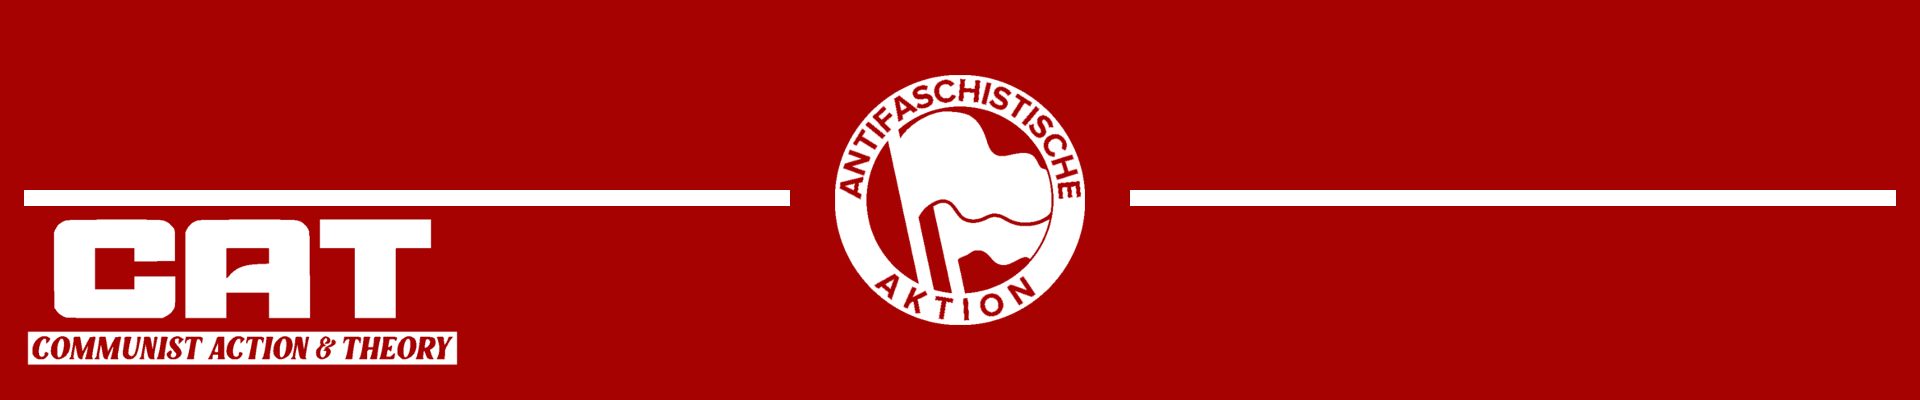 CALL FOR ACTION: Gegen die Abrissparty der Grünen – Lützerath verteidigen und Klimakommunismus erkämpfen.